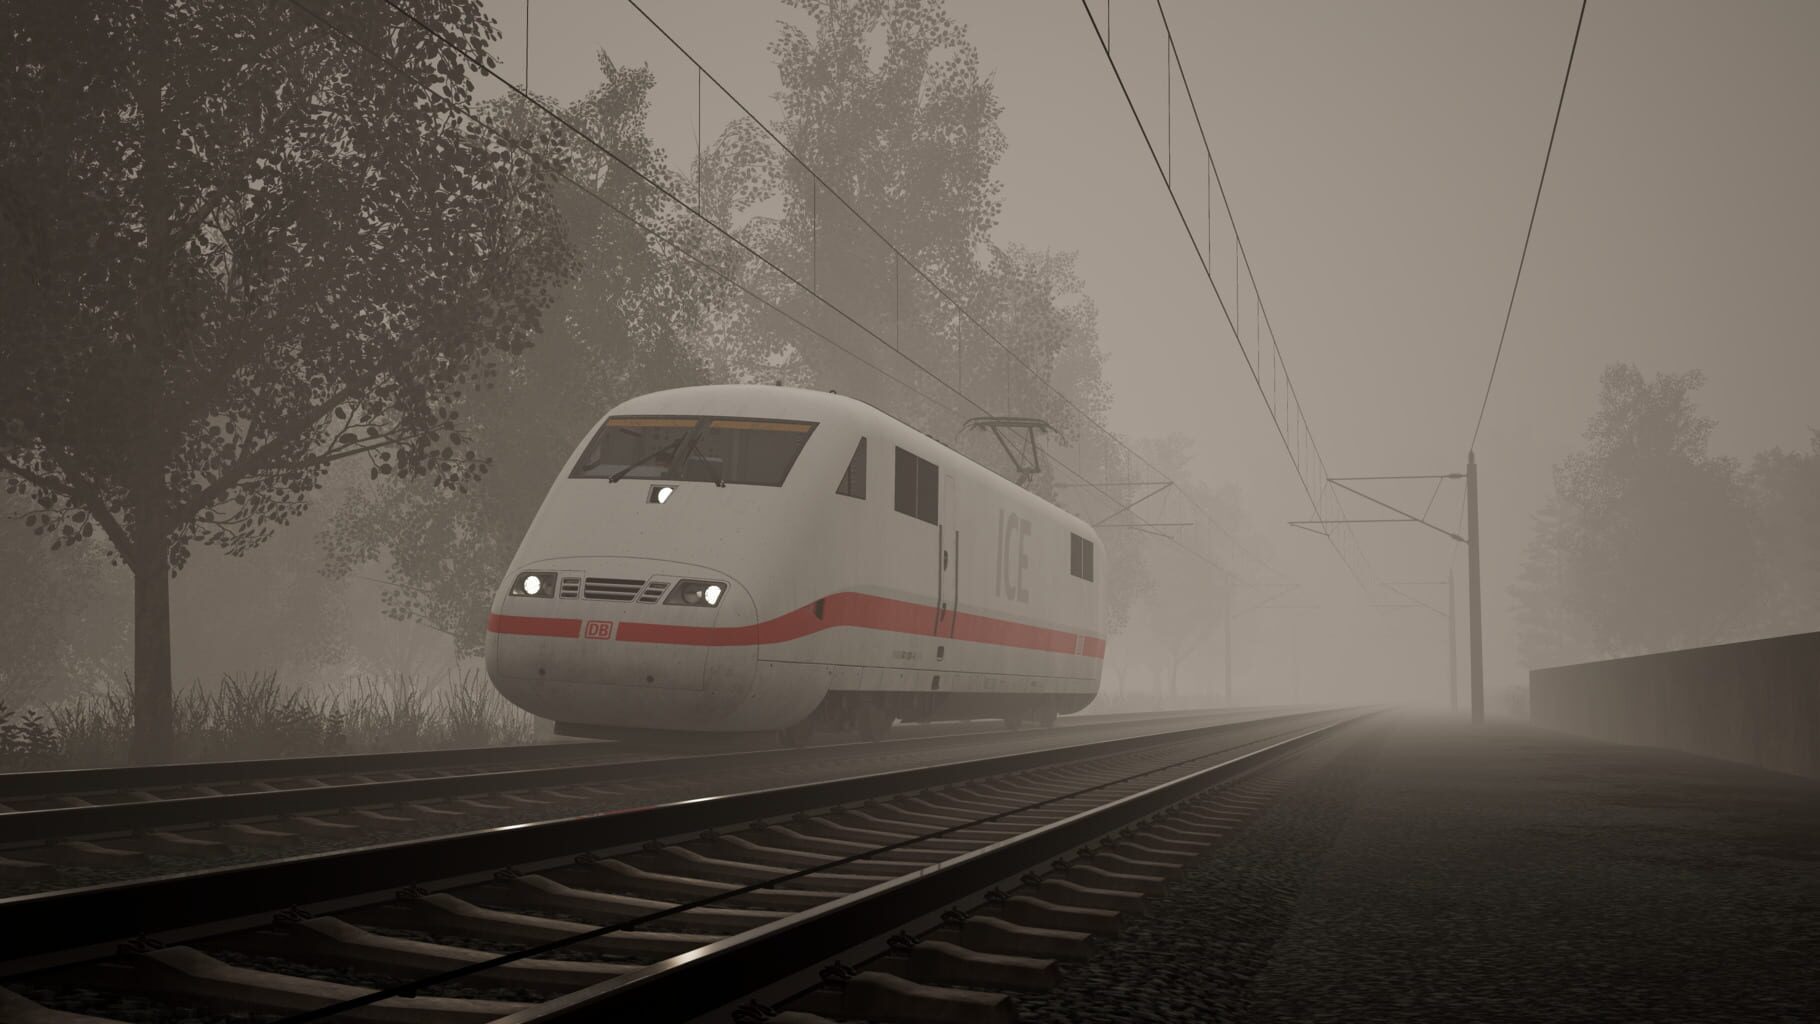 Train Sim World® 3: Standard Edition screenshots